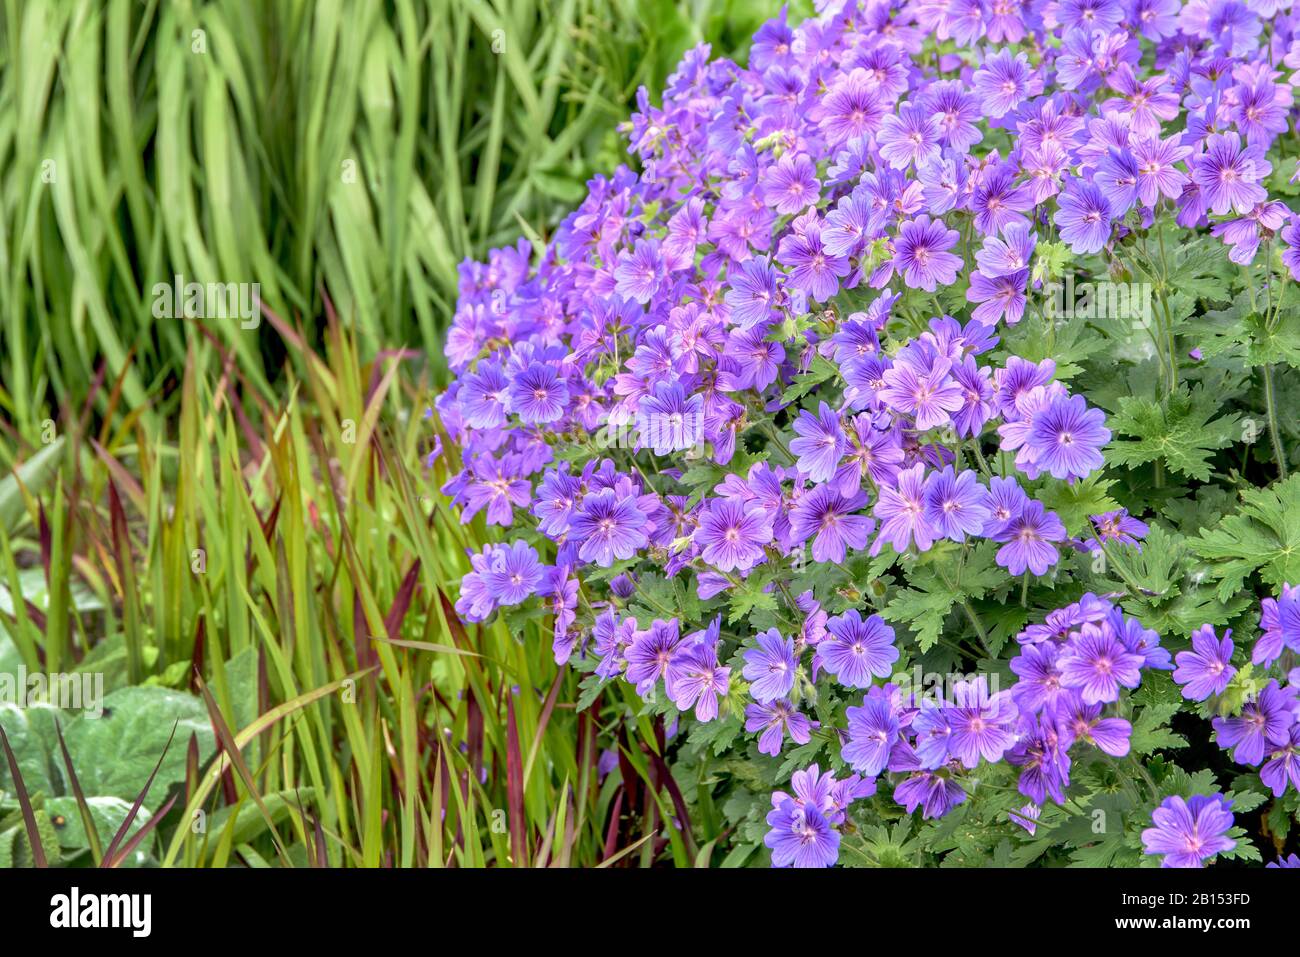 geraniums (Geranium x magnificum 'Rosemoor', Geranium x magnificum Rosemoor), cultivar Rosemoor Stock Photo